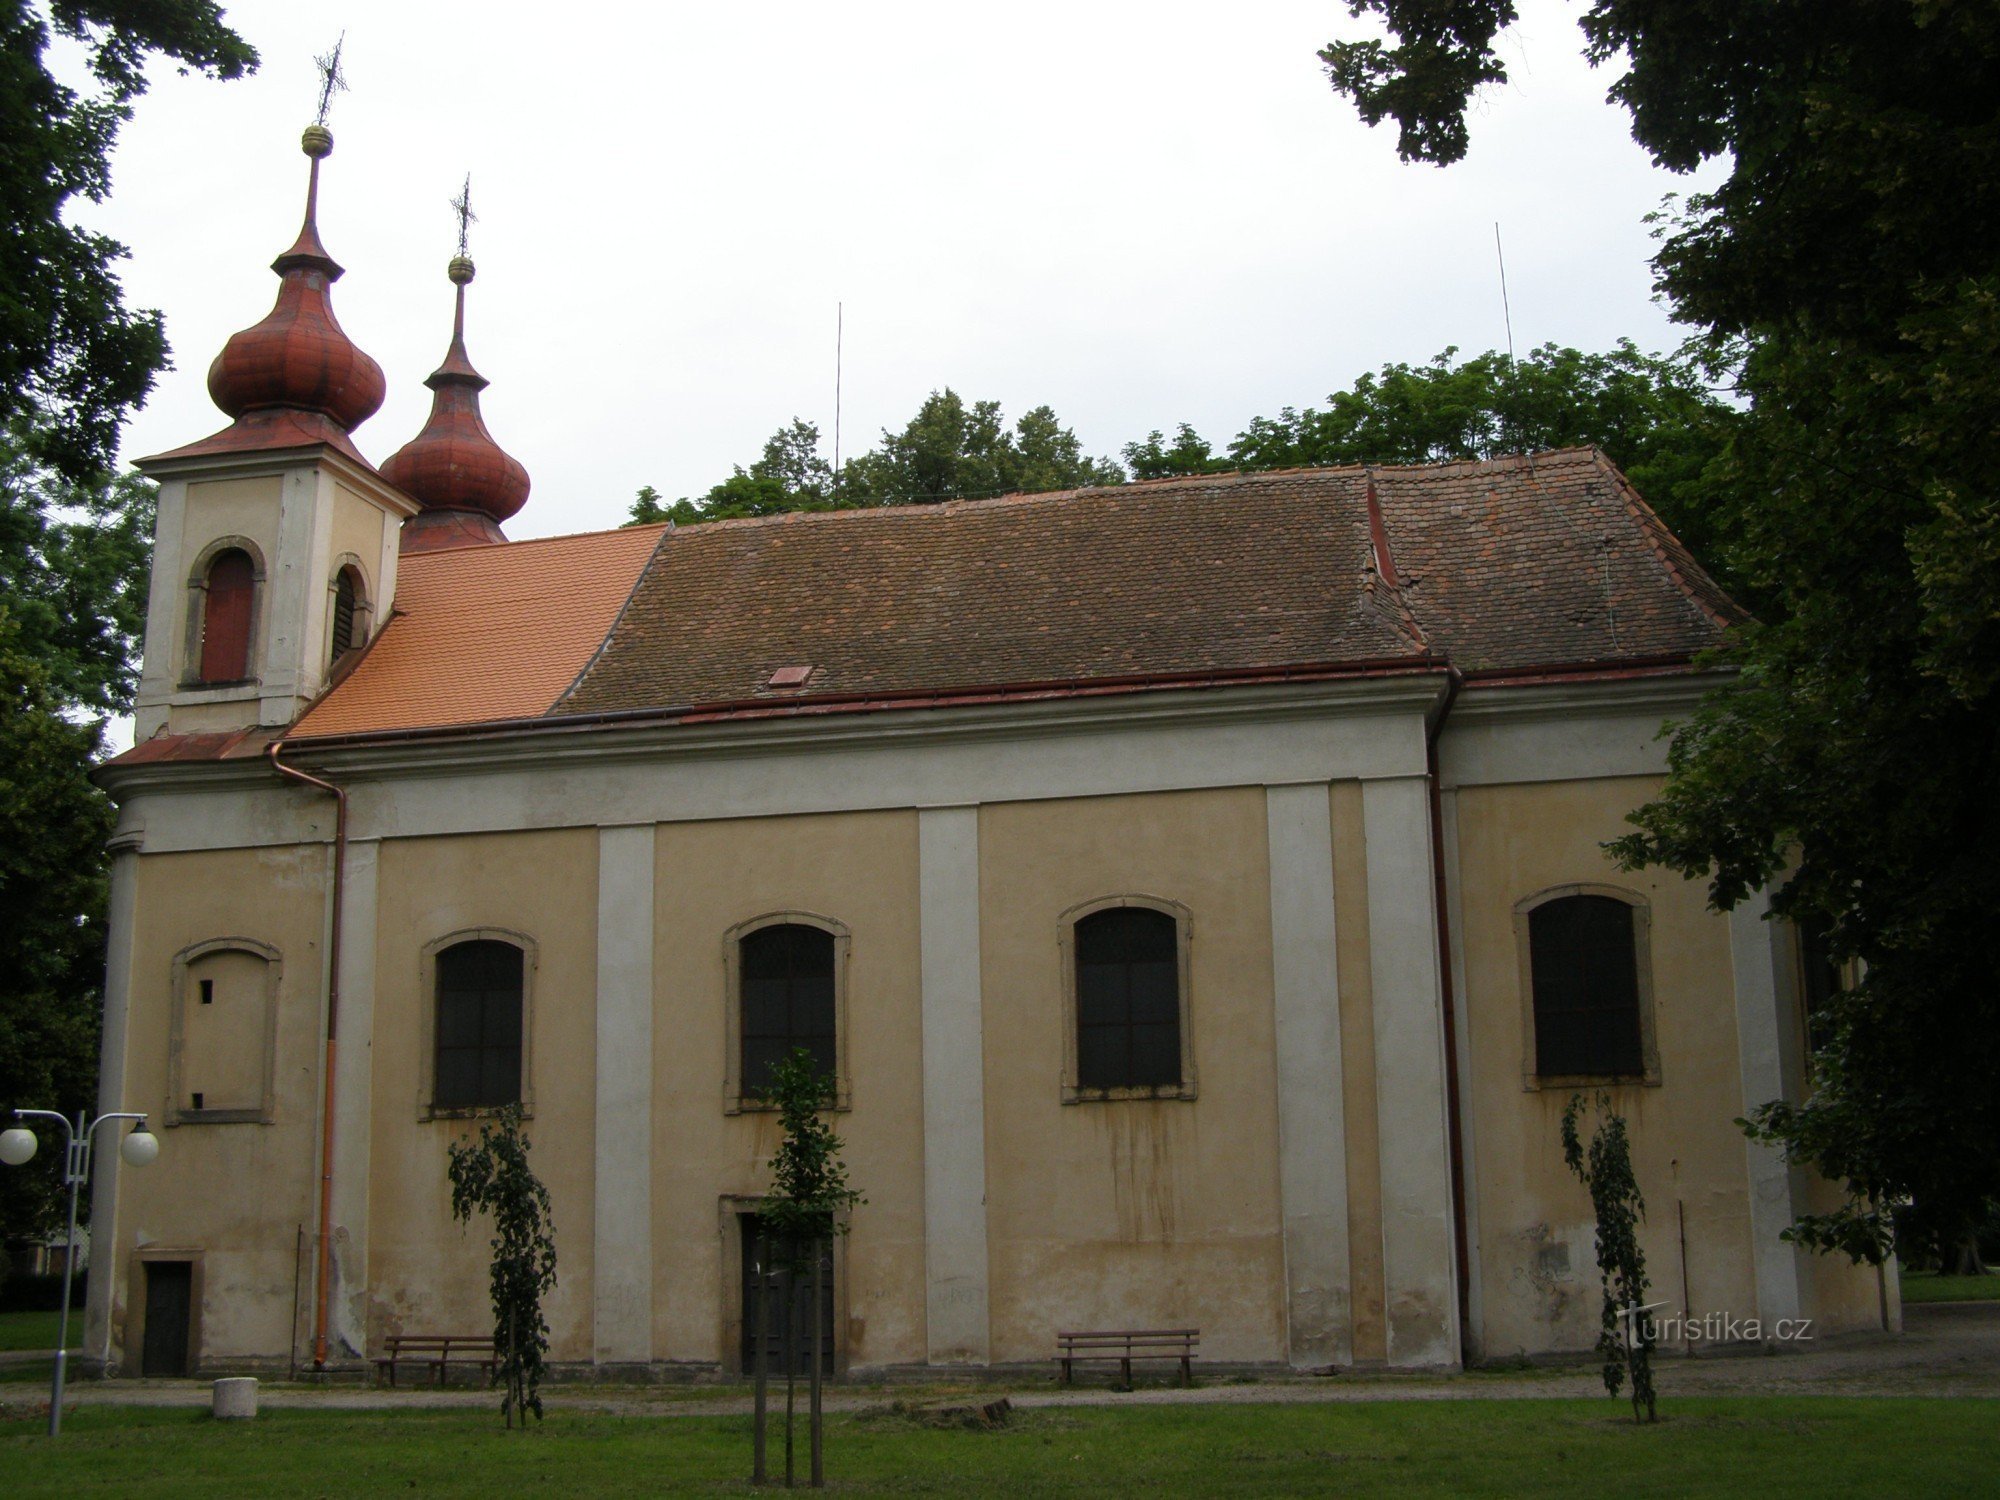 Nový Bydžov - Szentháromság templom